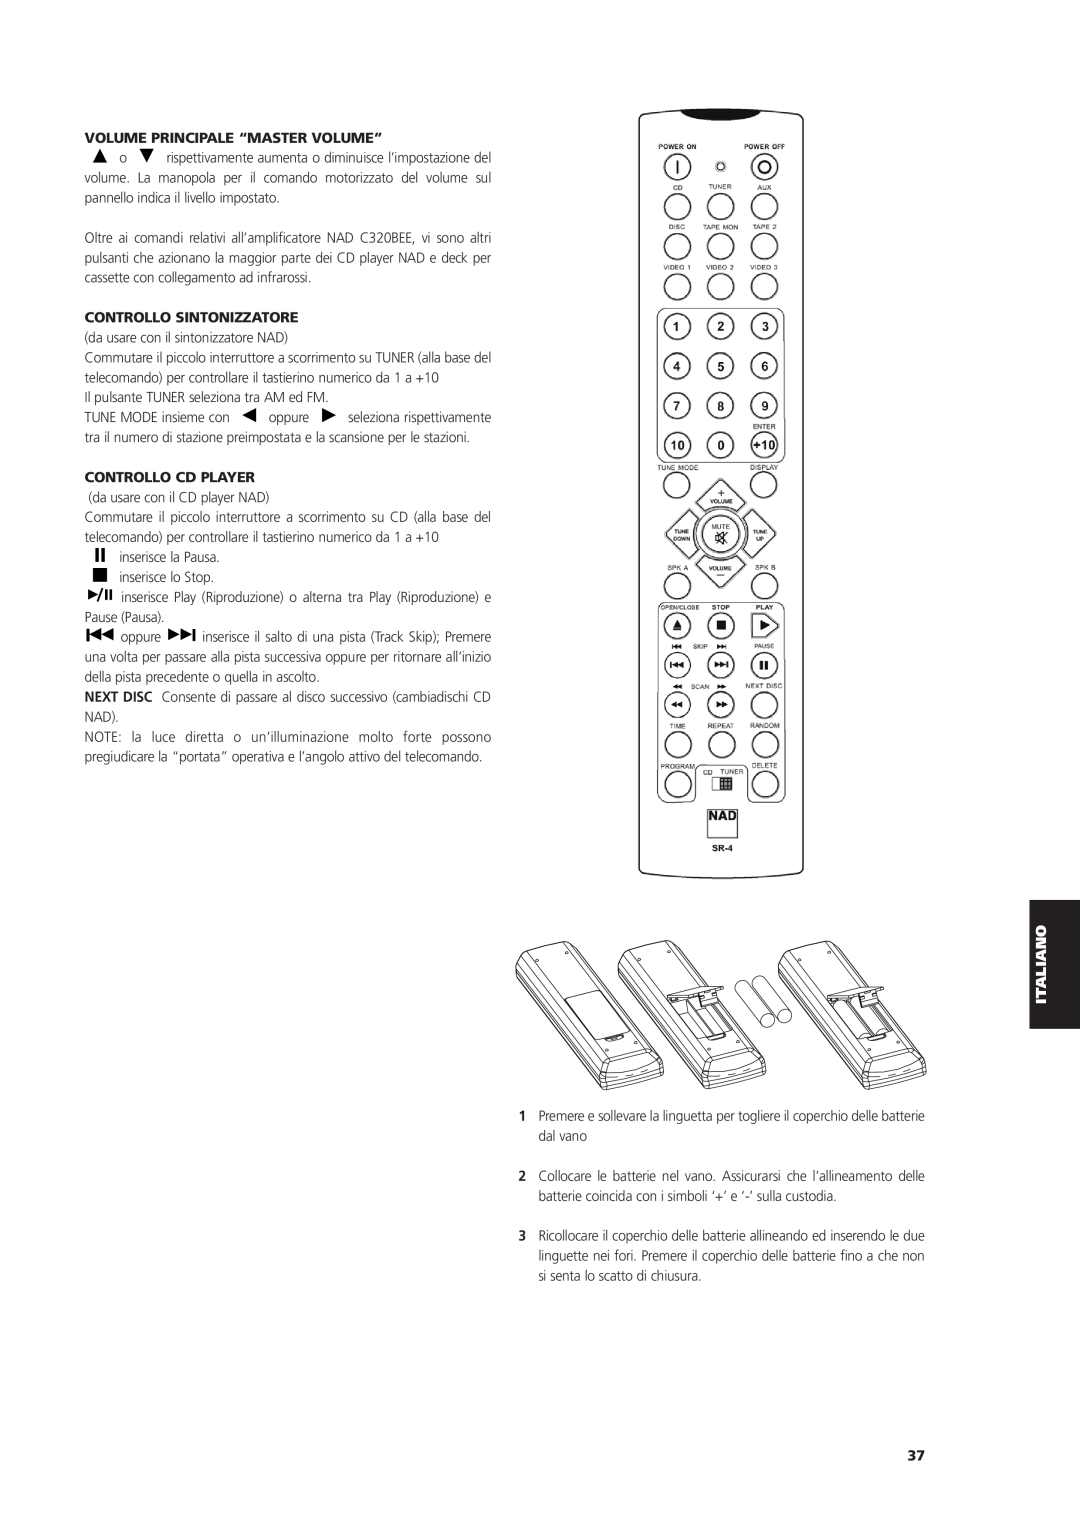 NAD C 320BEE owner manual Volume Principale “Master Volume”, Controllo Sintonizzatore, Controllo Cd Player 